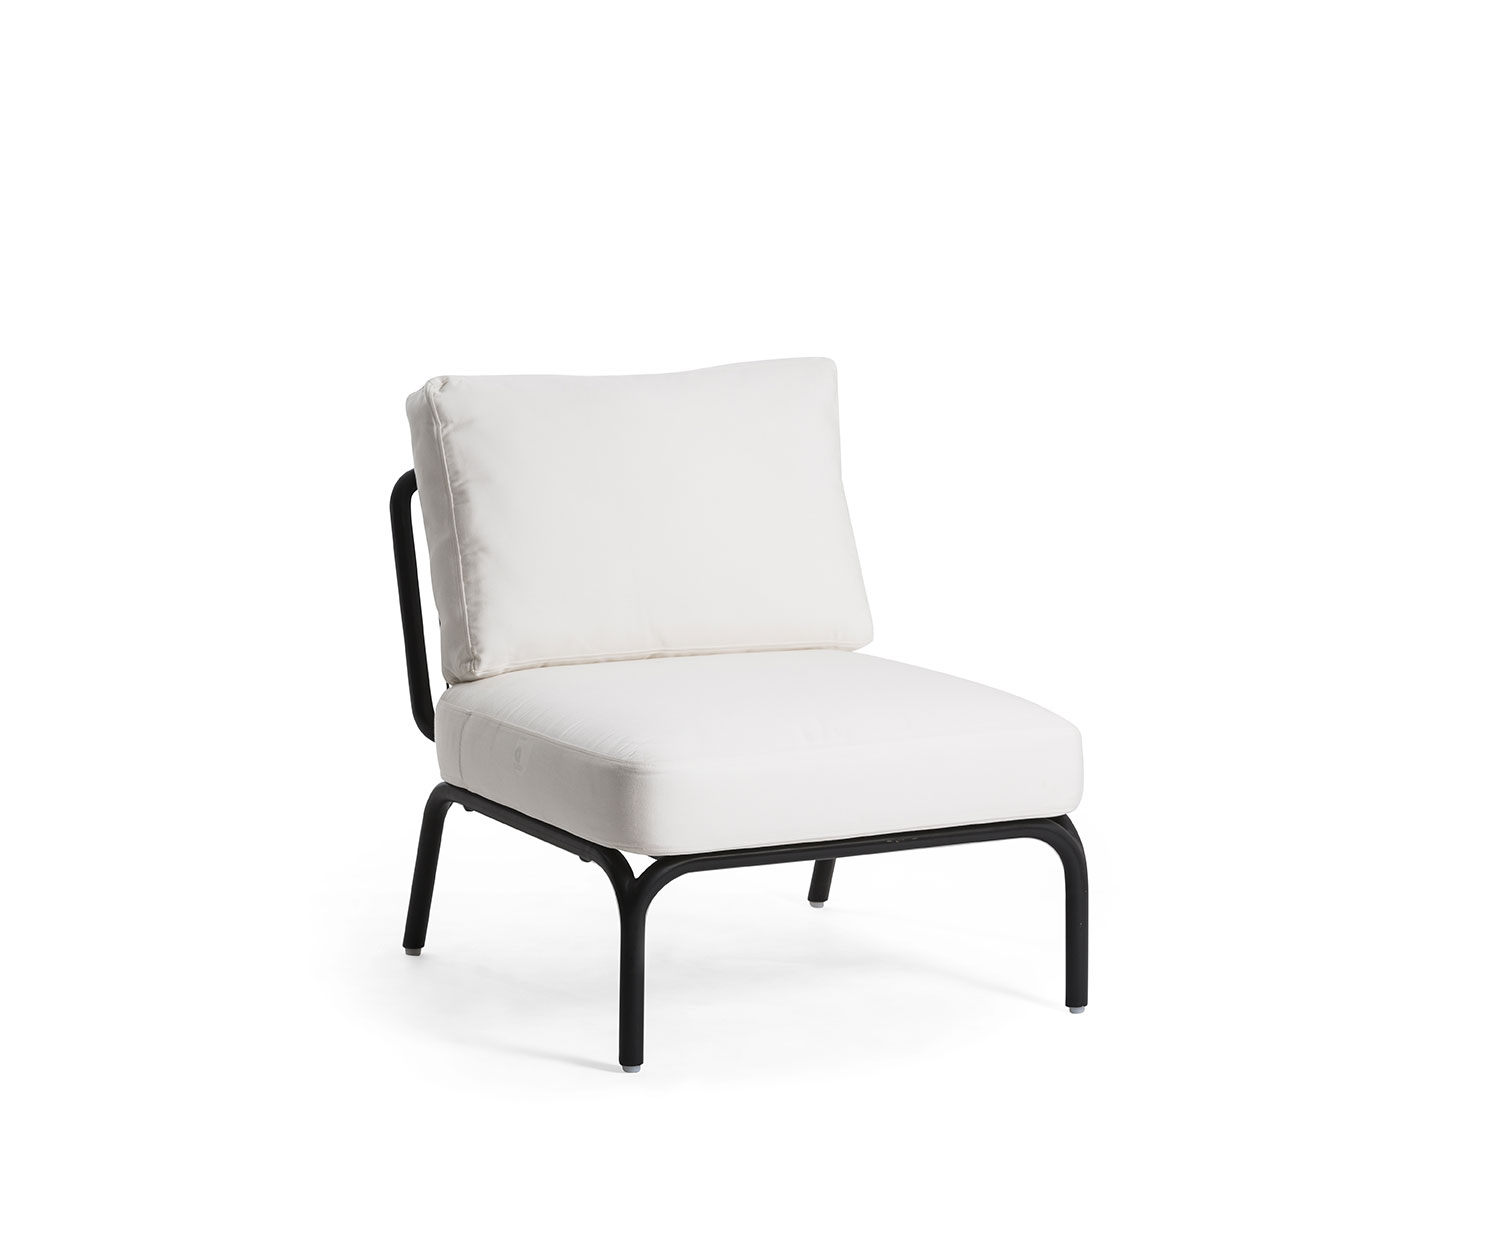 Exklusiver Oasiq Yland Designer 1 Sitzer mit weißem Sitz und Rücken Kissen